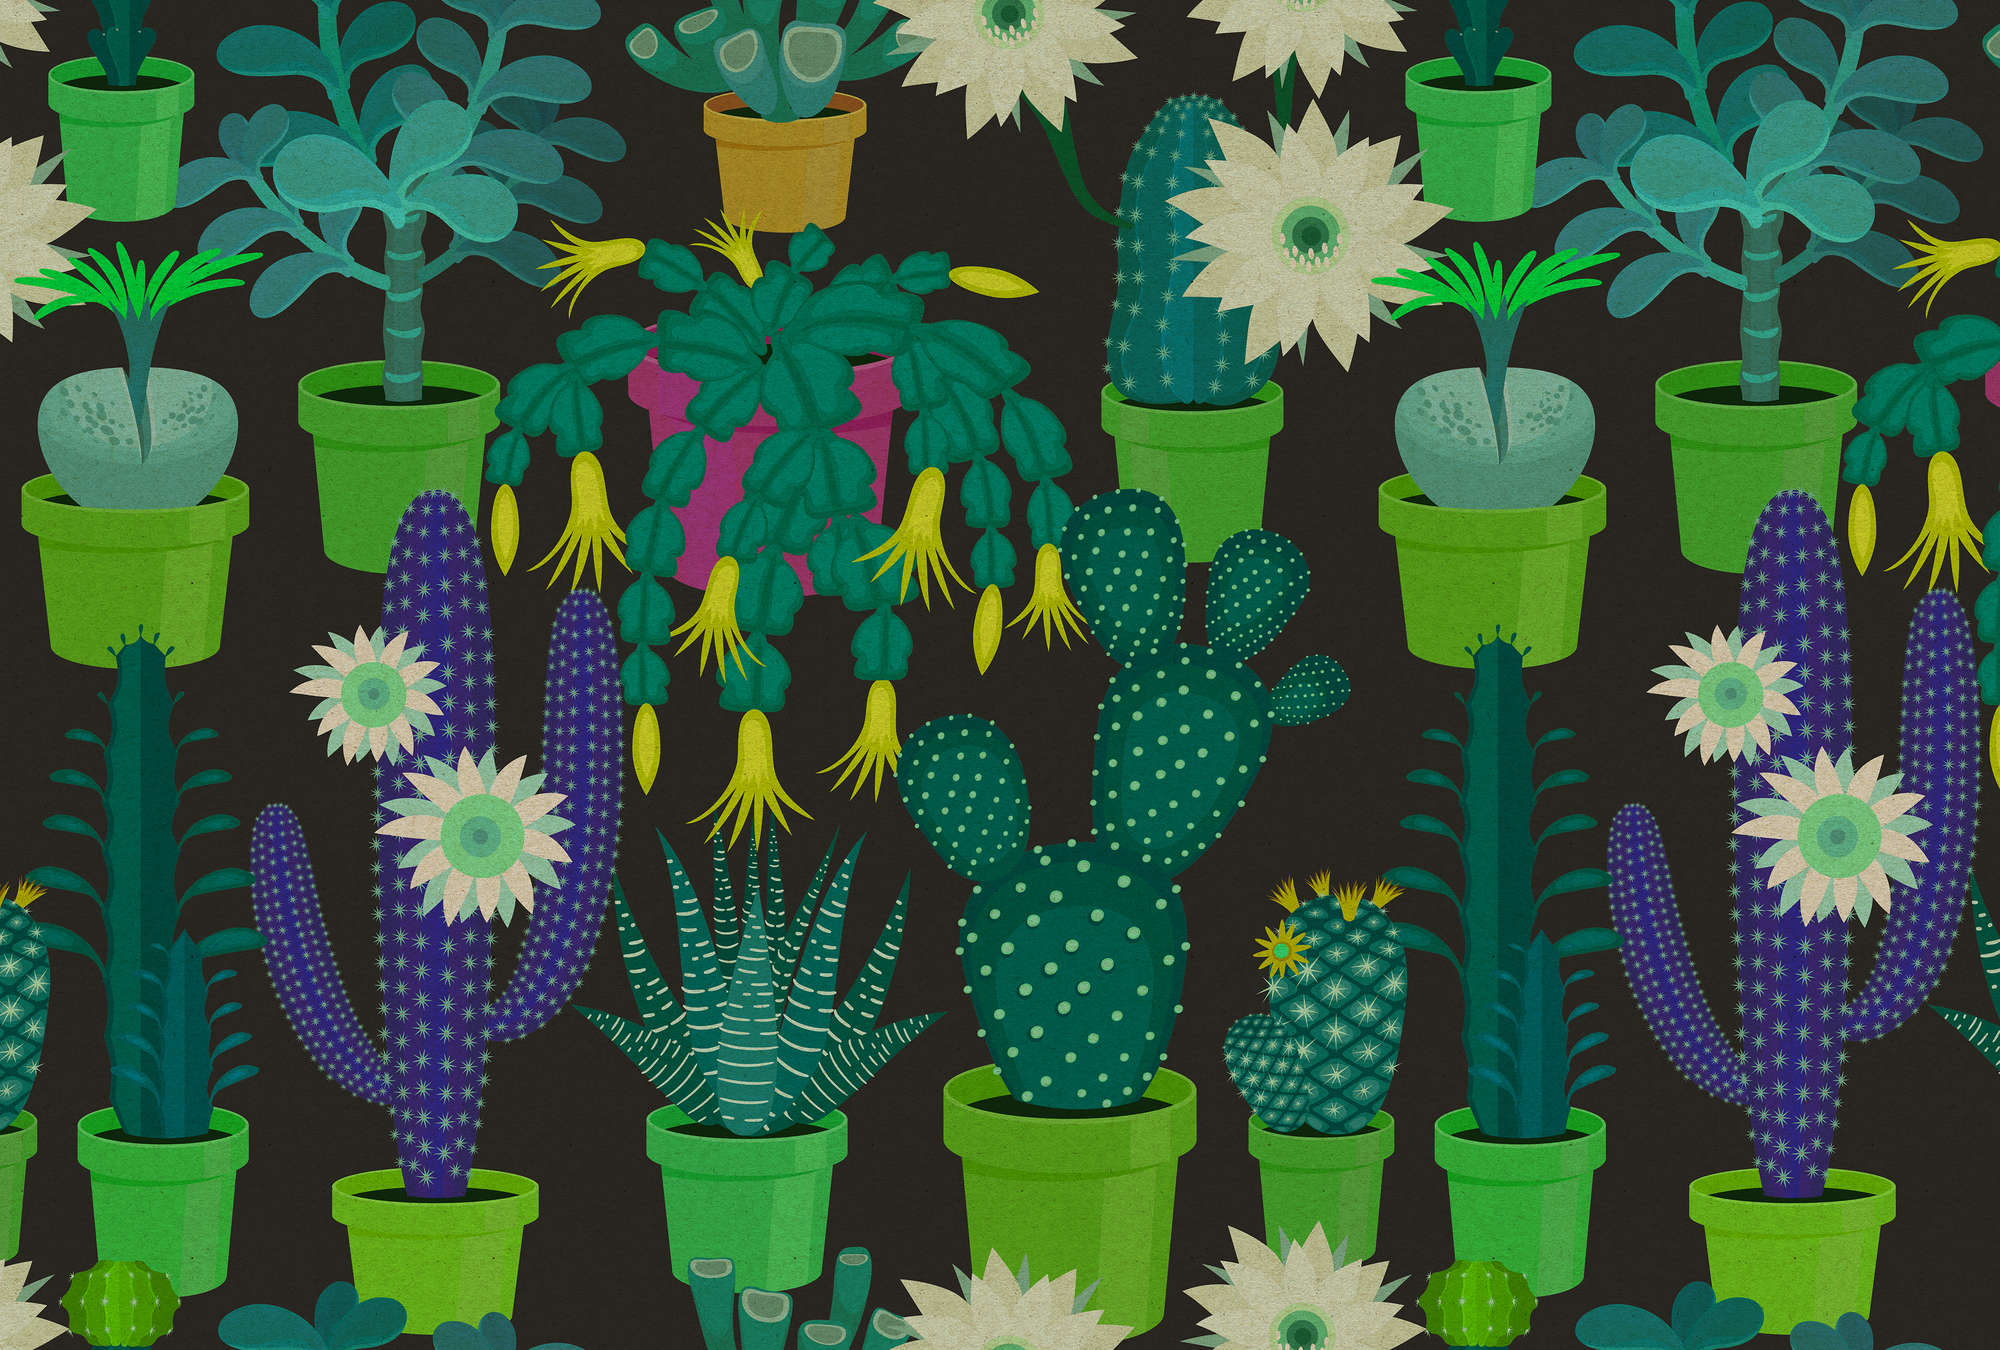             Giardino di cactus 2 - Fotomurali con cactus colorati in stile fumetto in una struttura di cartone - Verde, nero | Pile liscio premium
        